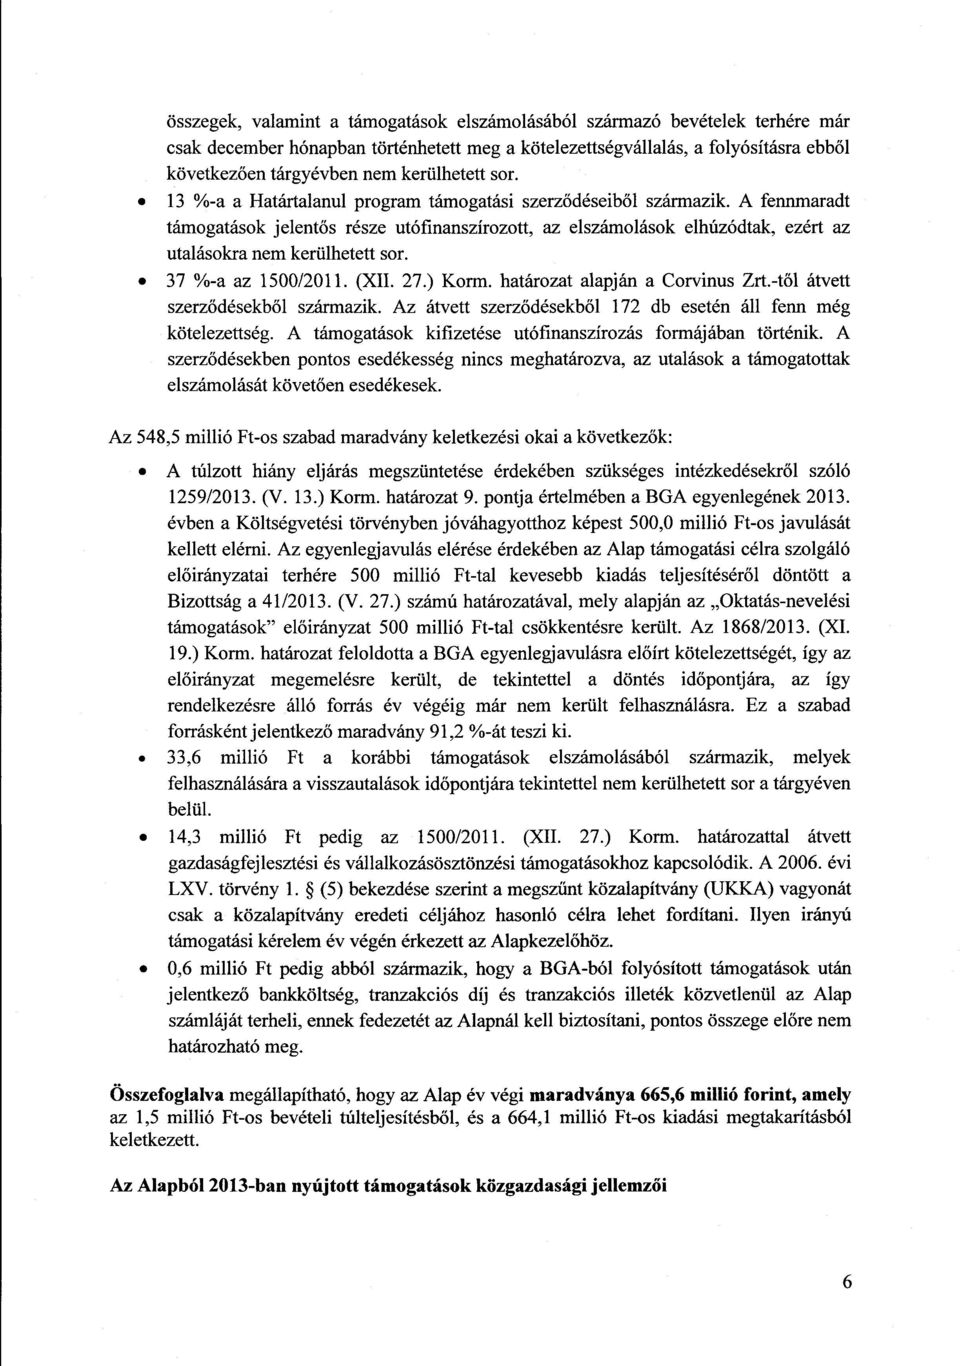 A fennmaradt támogatások jelentős része utófinanszírozott, az elszámolások elhúzódtak, ezért a z utalásokra nem kerülhetett sor. 37 %-a az 1500/2011. (XII. 27.) Korm. határozat alapján a Corvinus Zrt.